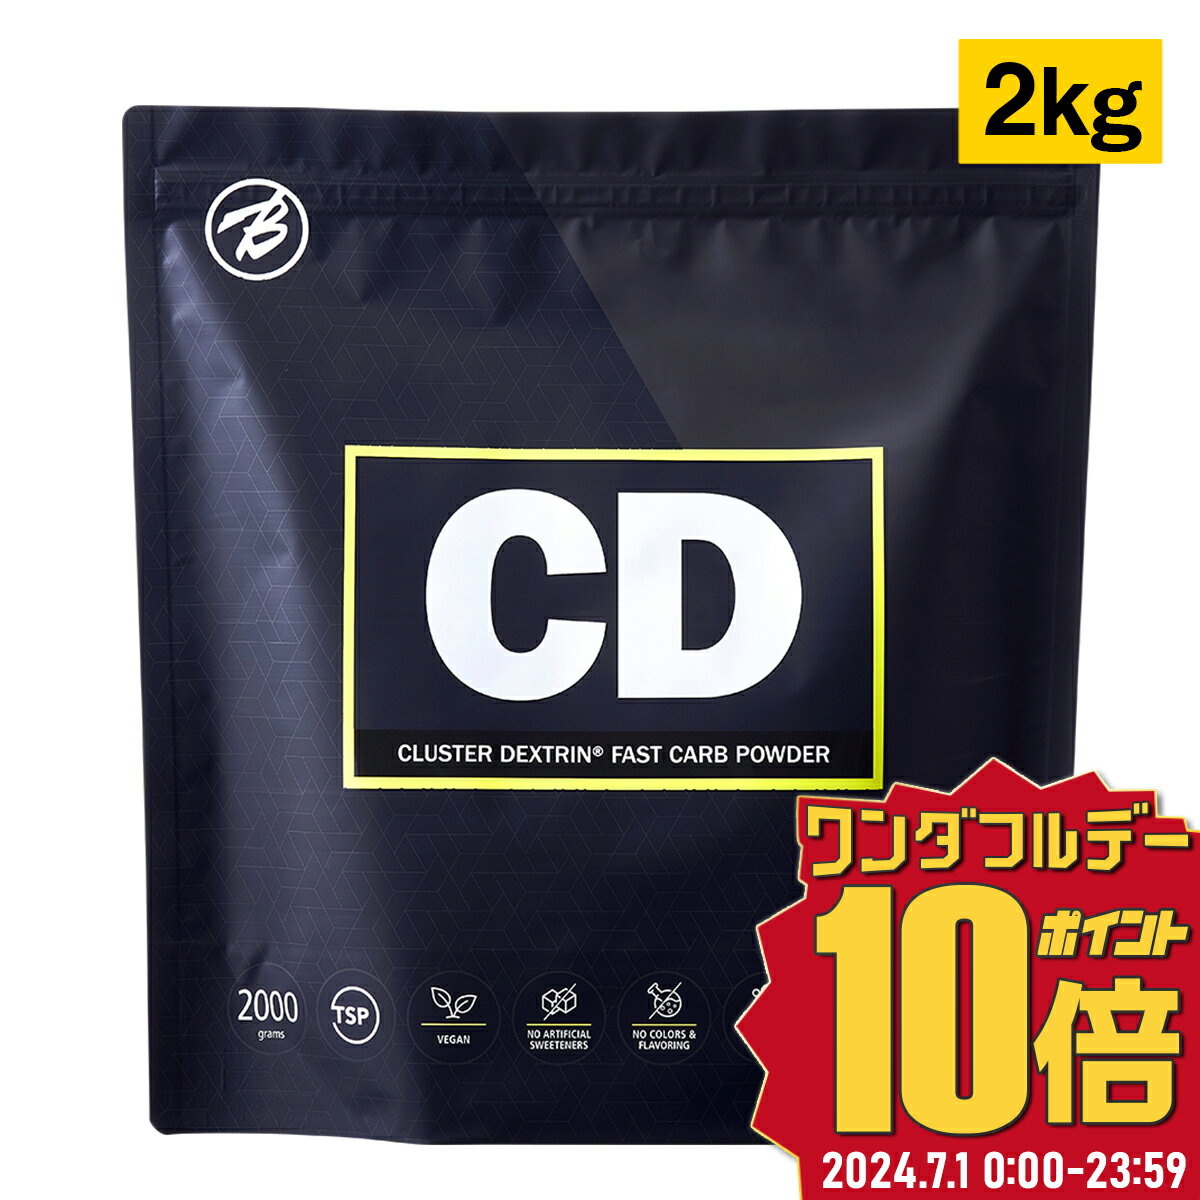 【バルクスポーツ】CD クラスターデキストリン 国産 2kg 約90食分 ギフト